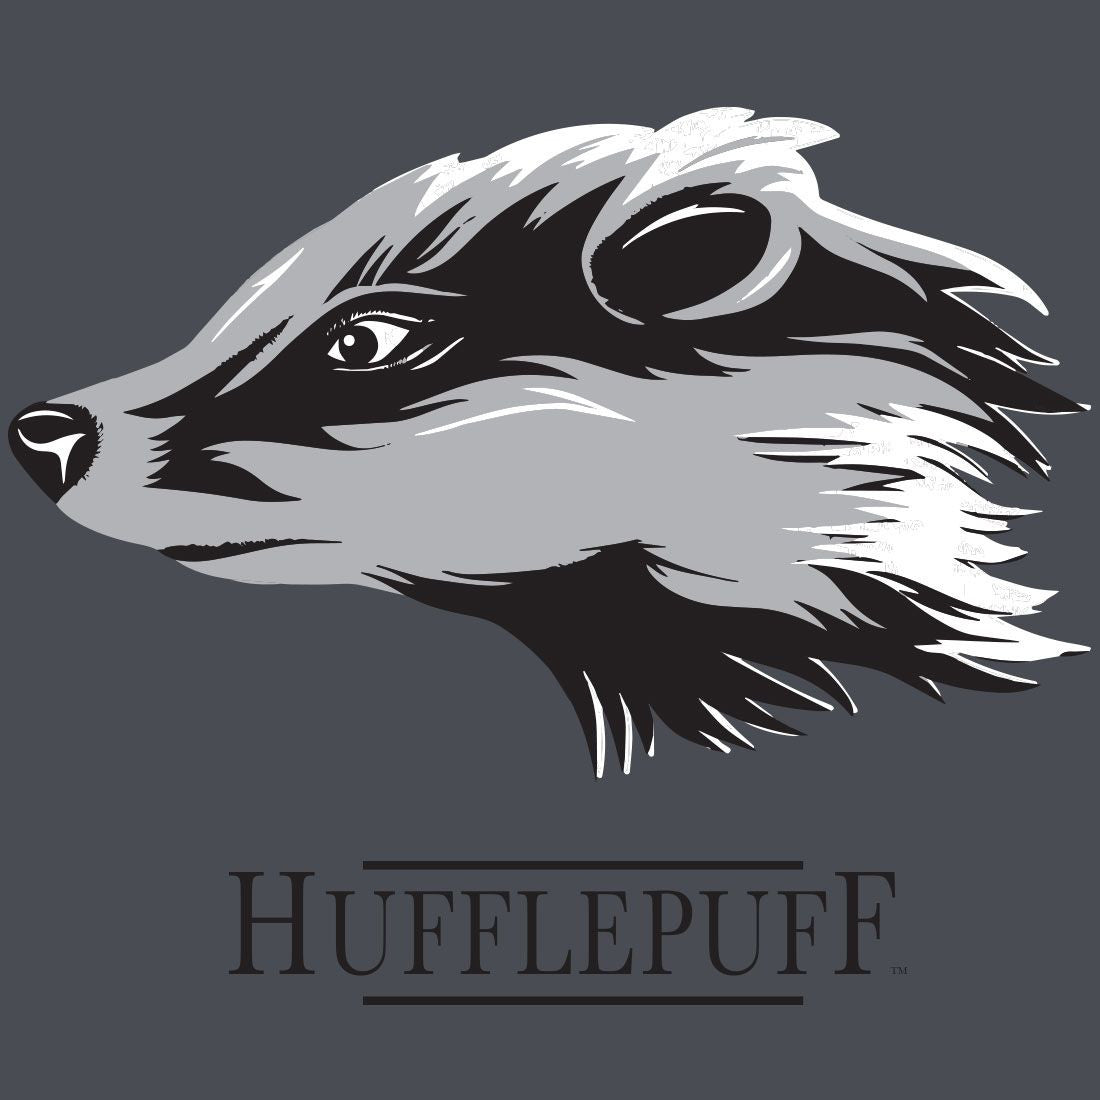 Harry Potter Women's T-shirt - Hufflepuff Reverse Sequin